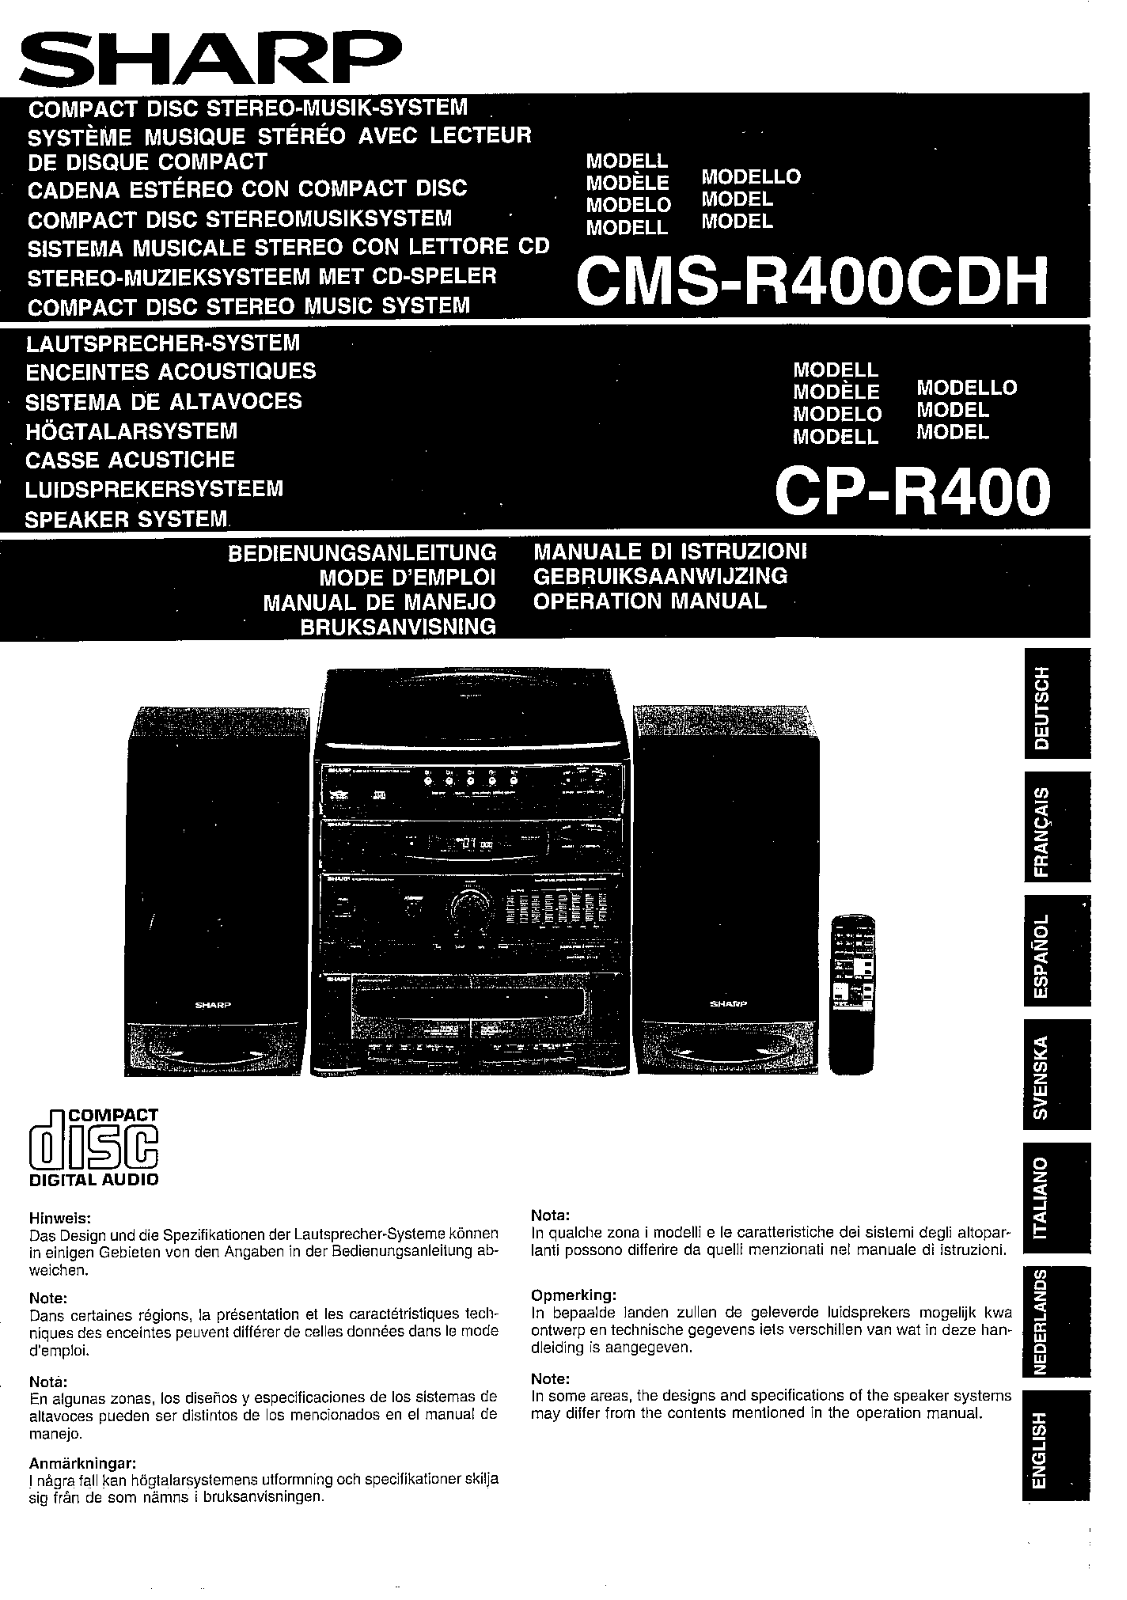 Sharp CMS, CP-R400, CDH Manual